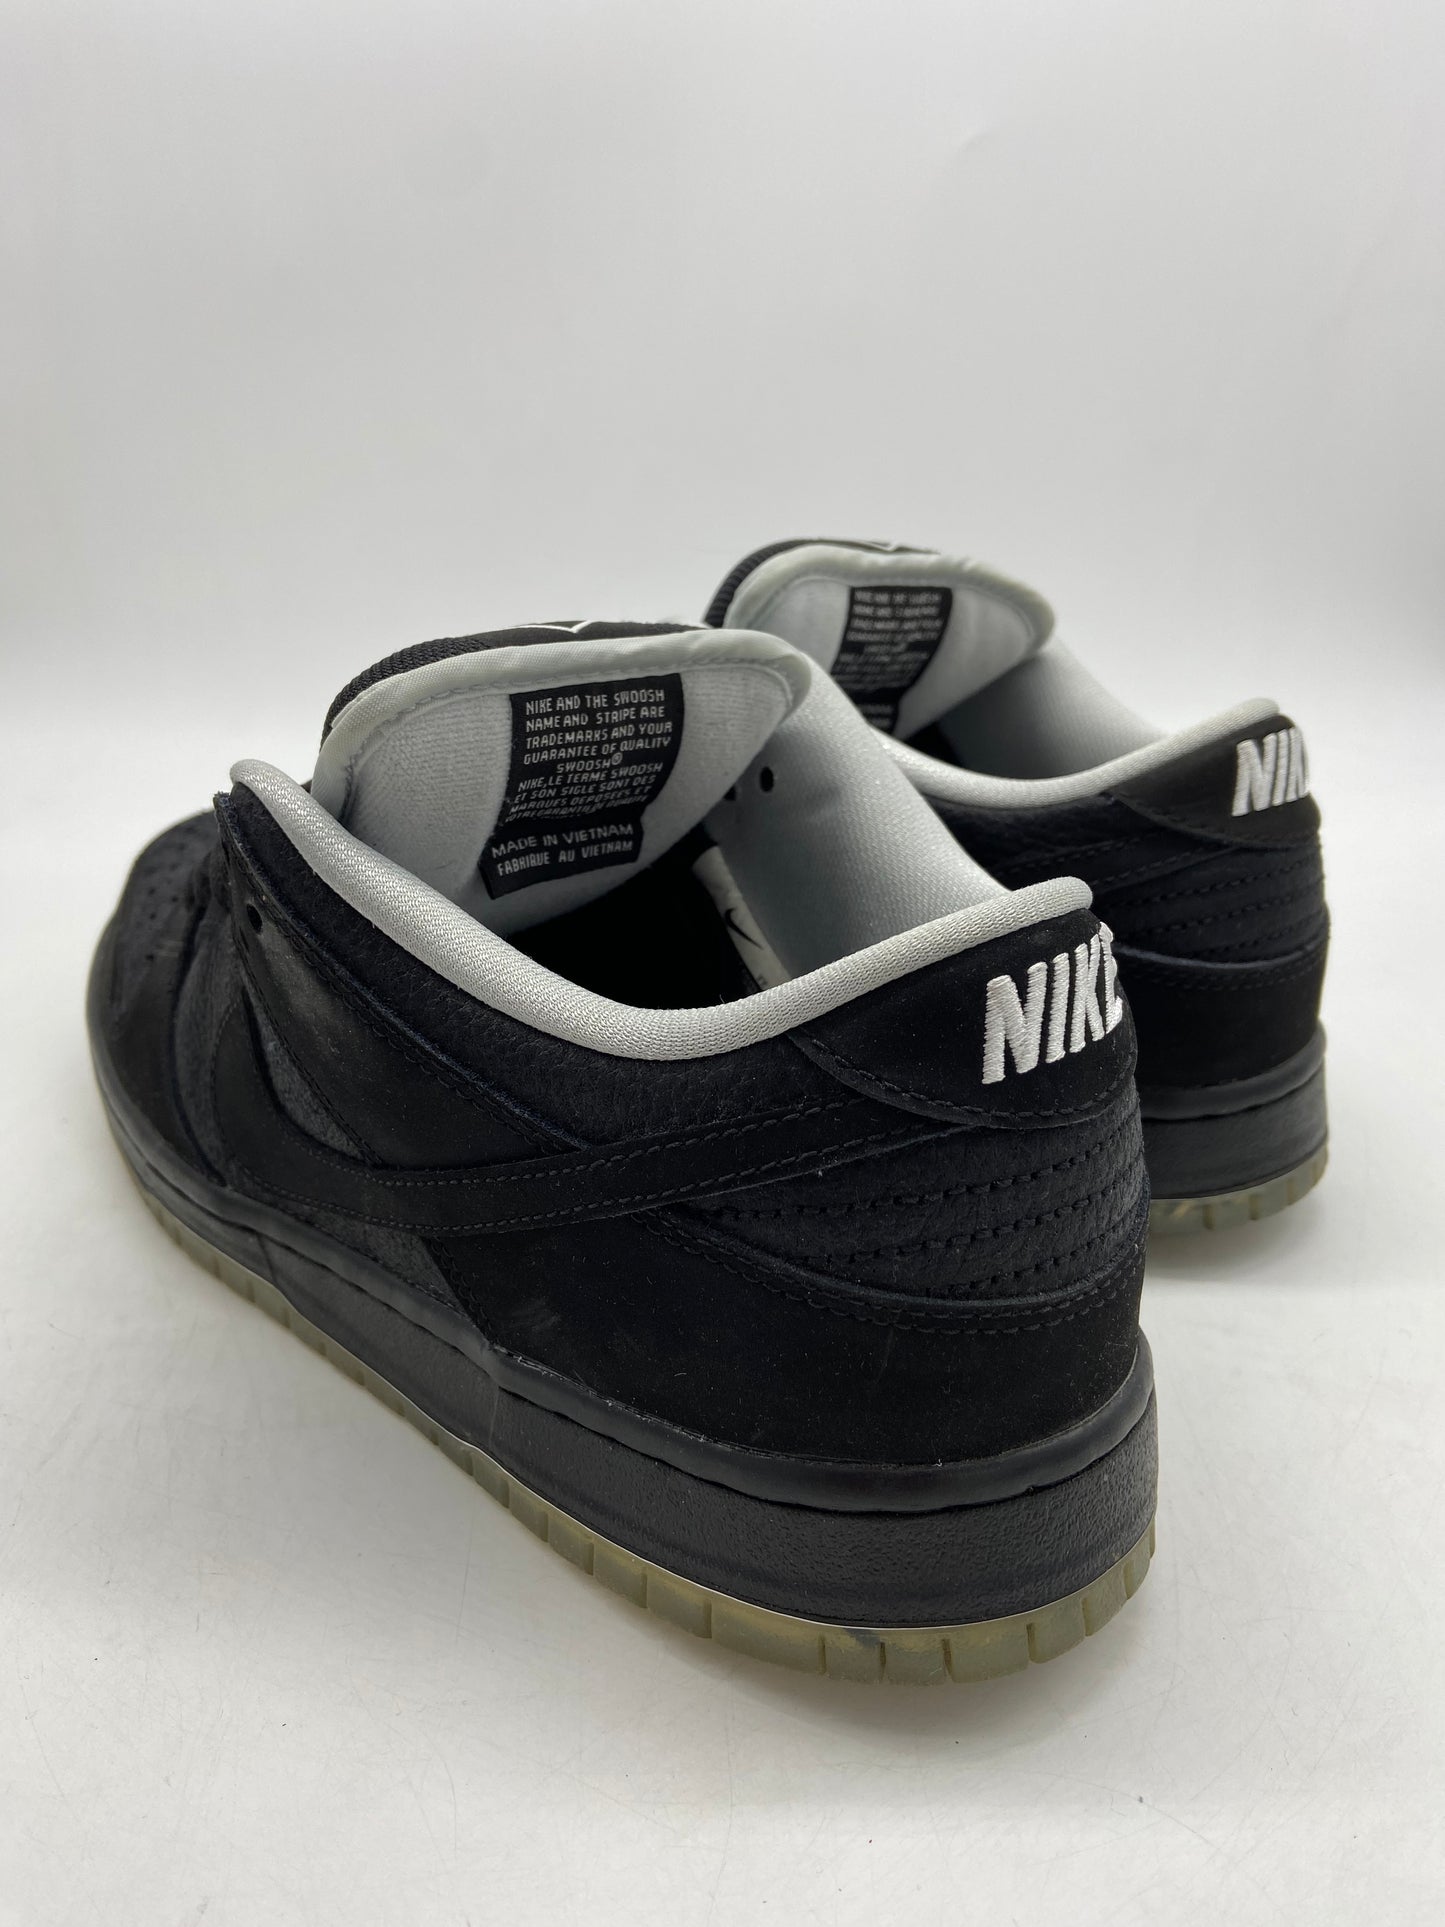 Preowned Nike SB Dunk Low Atlas 35MM Black Pair # 87/1100 Sz 9M/10.5W 504750-066